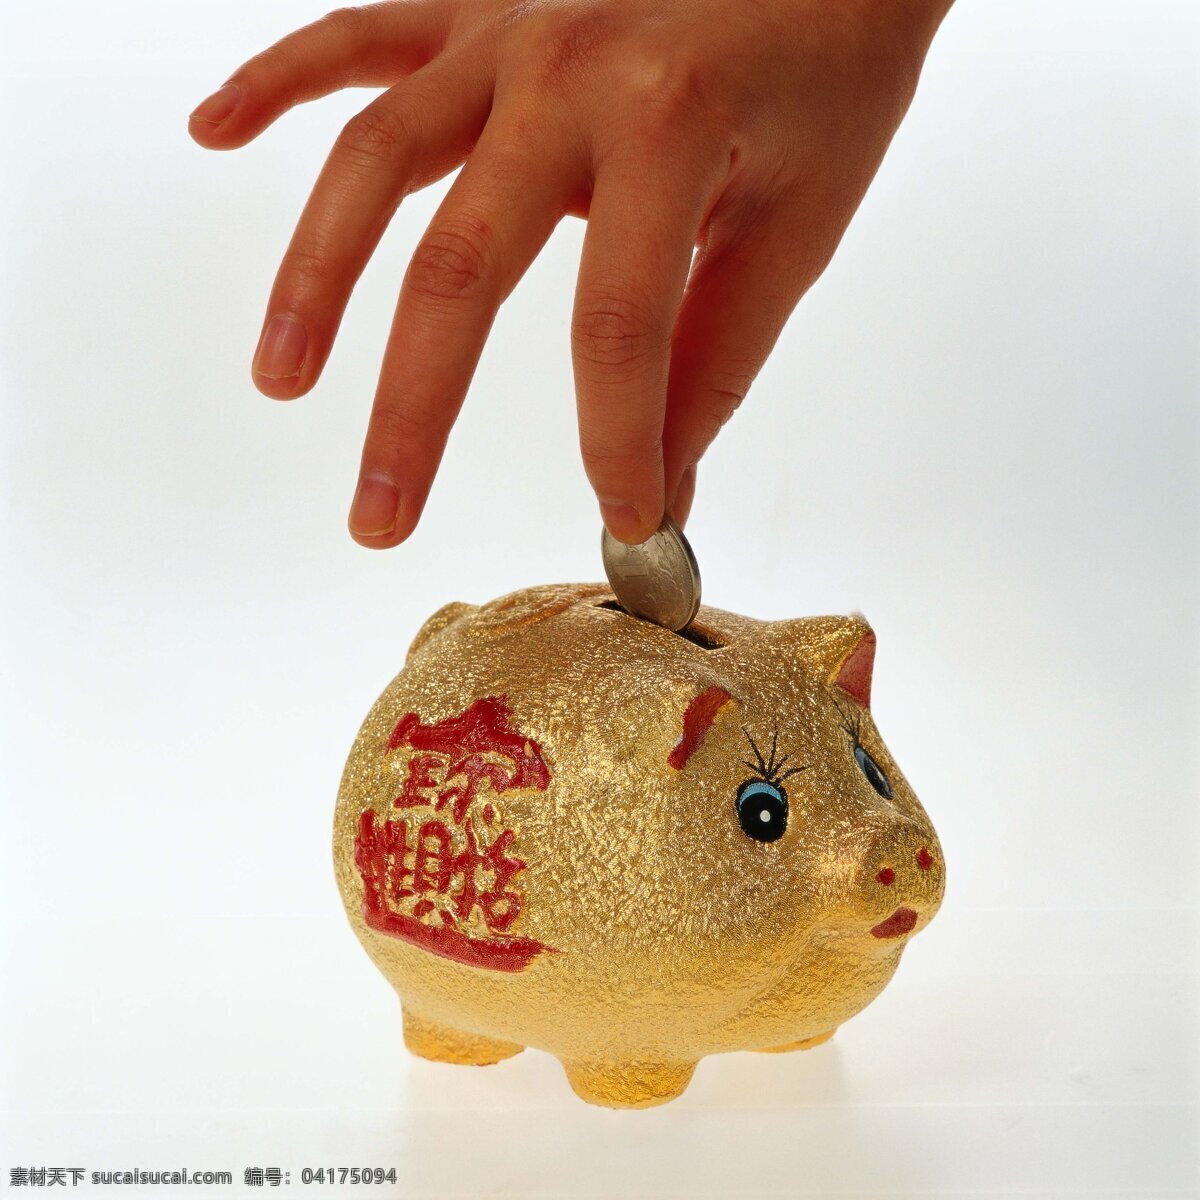 可爱 小 猪 存 储罐 招财进宝 硬币 生活素材 生活百科